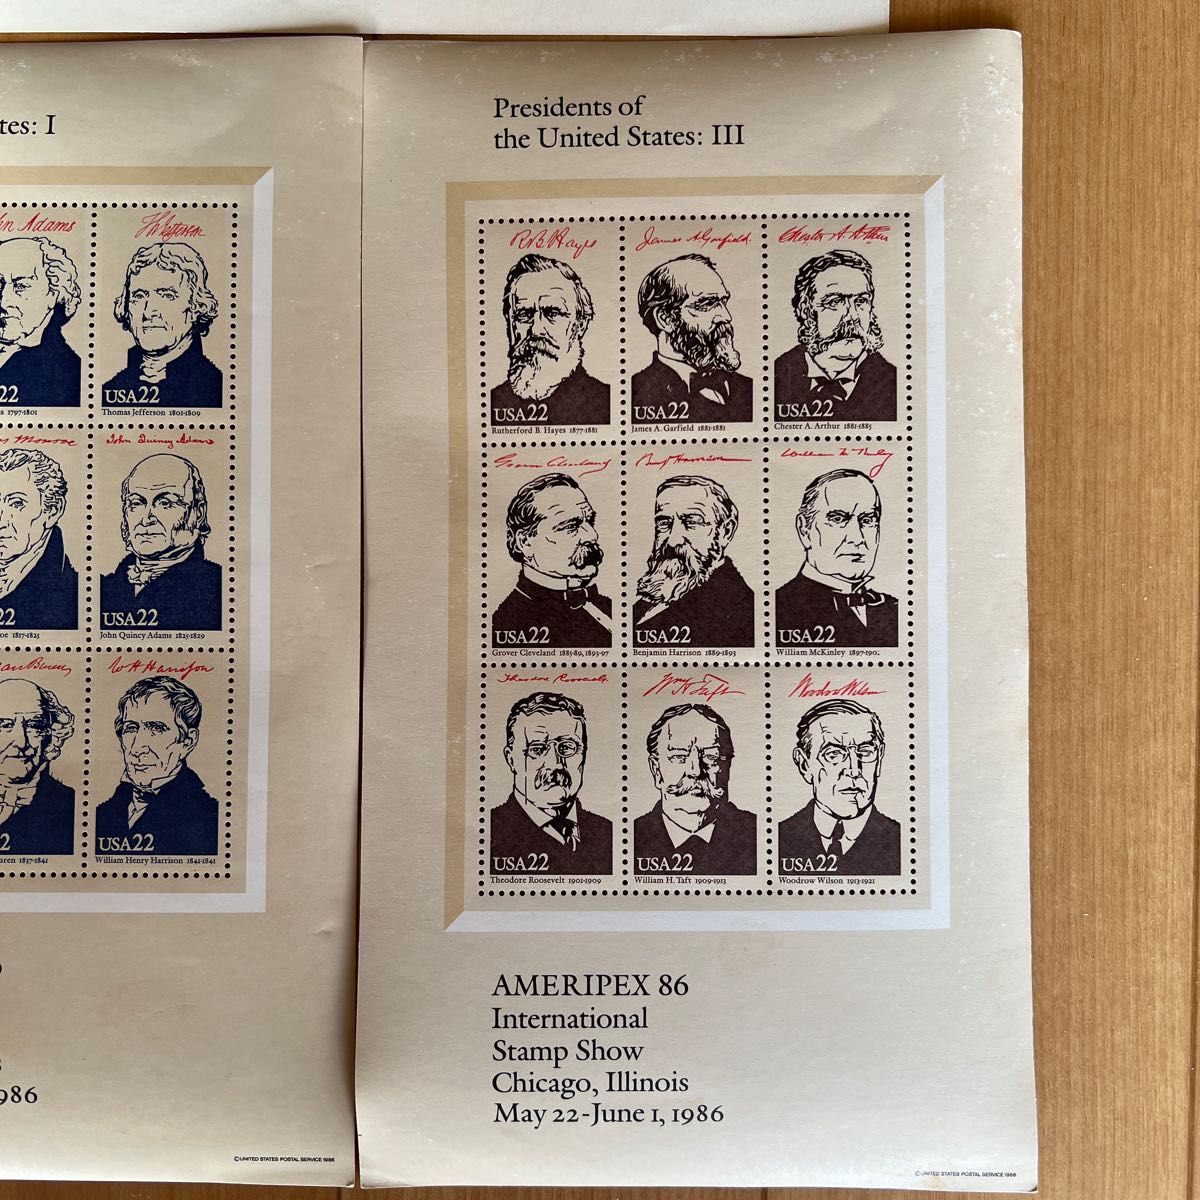 アメリカ切手 シート。アメリカ独立戦争と南北戦争切手シート4種　アメリカ大統領4シート